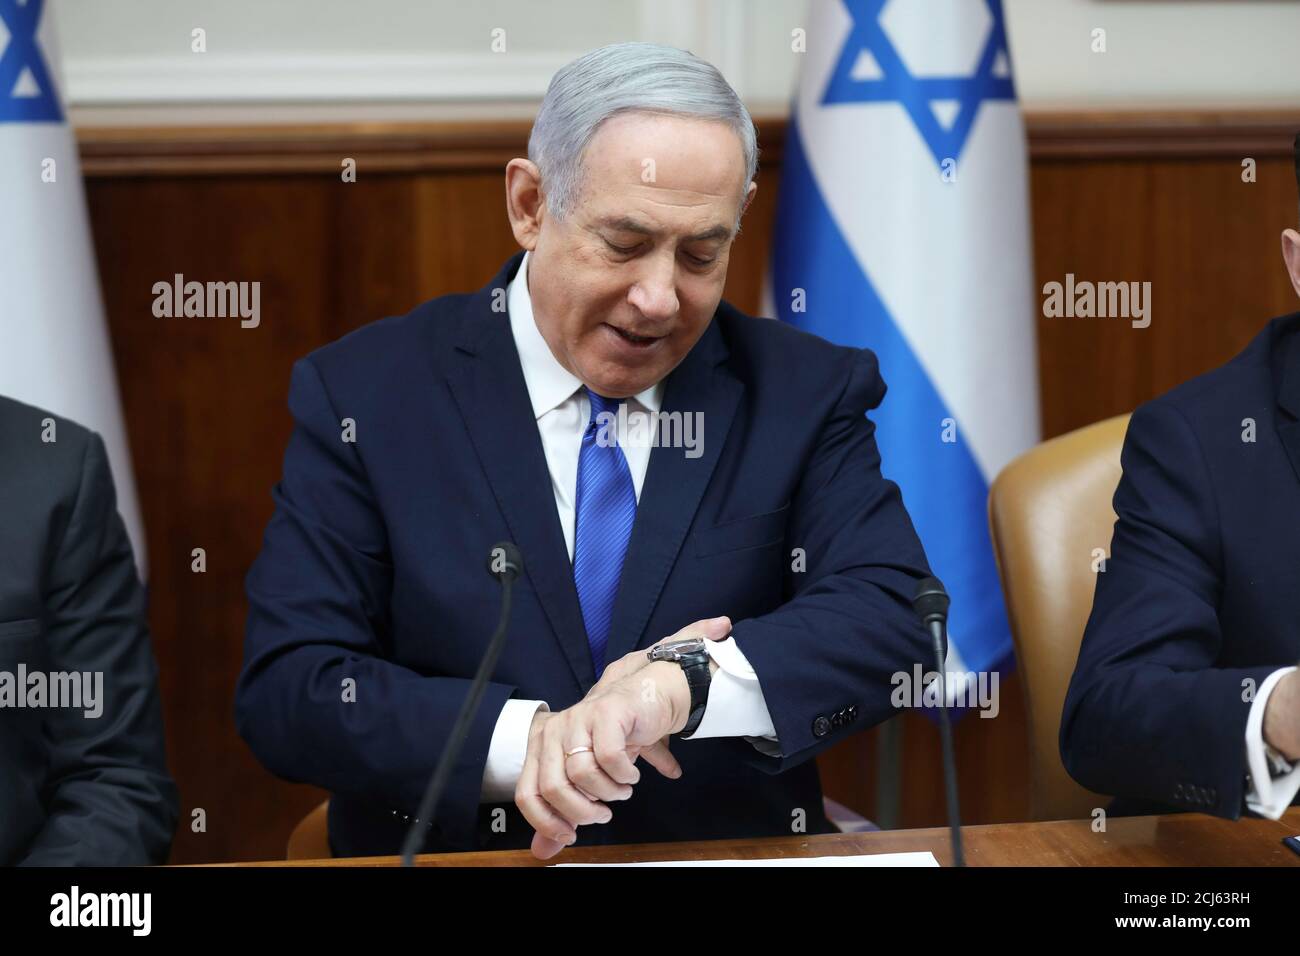 Israeli Prime Minister Benjamin Netanyahu attends the weekly cabinet meeting in Jerusalem, Israel, December 29, 2019. Abir Sultan/Pool via REUTERS Stock Photo